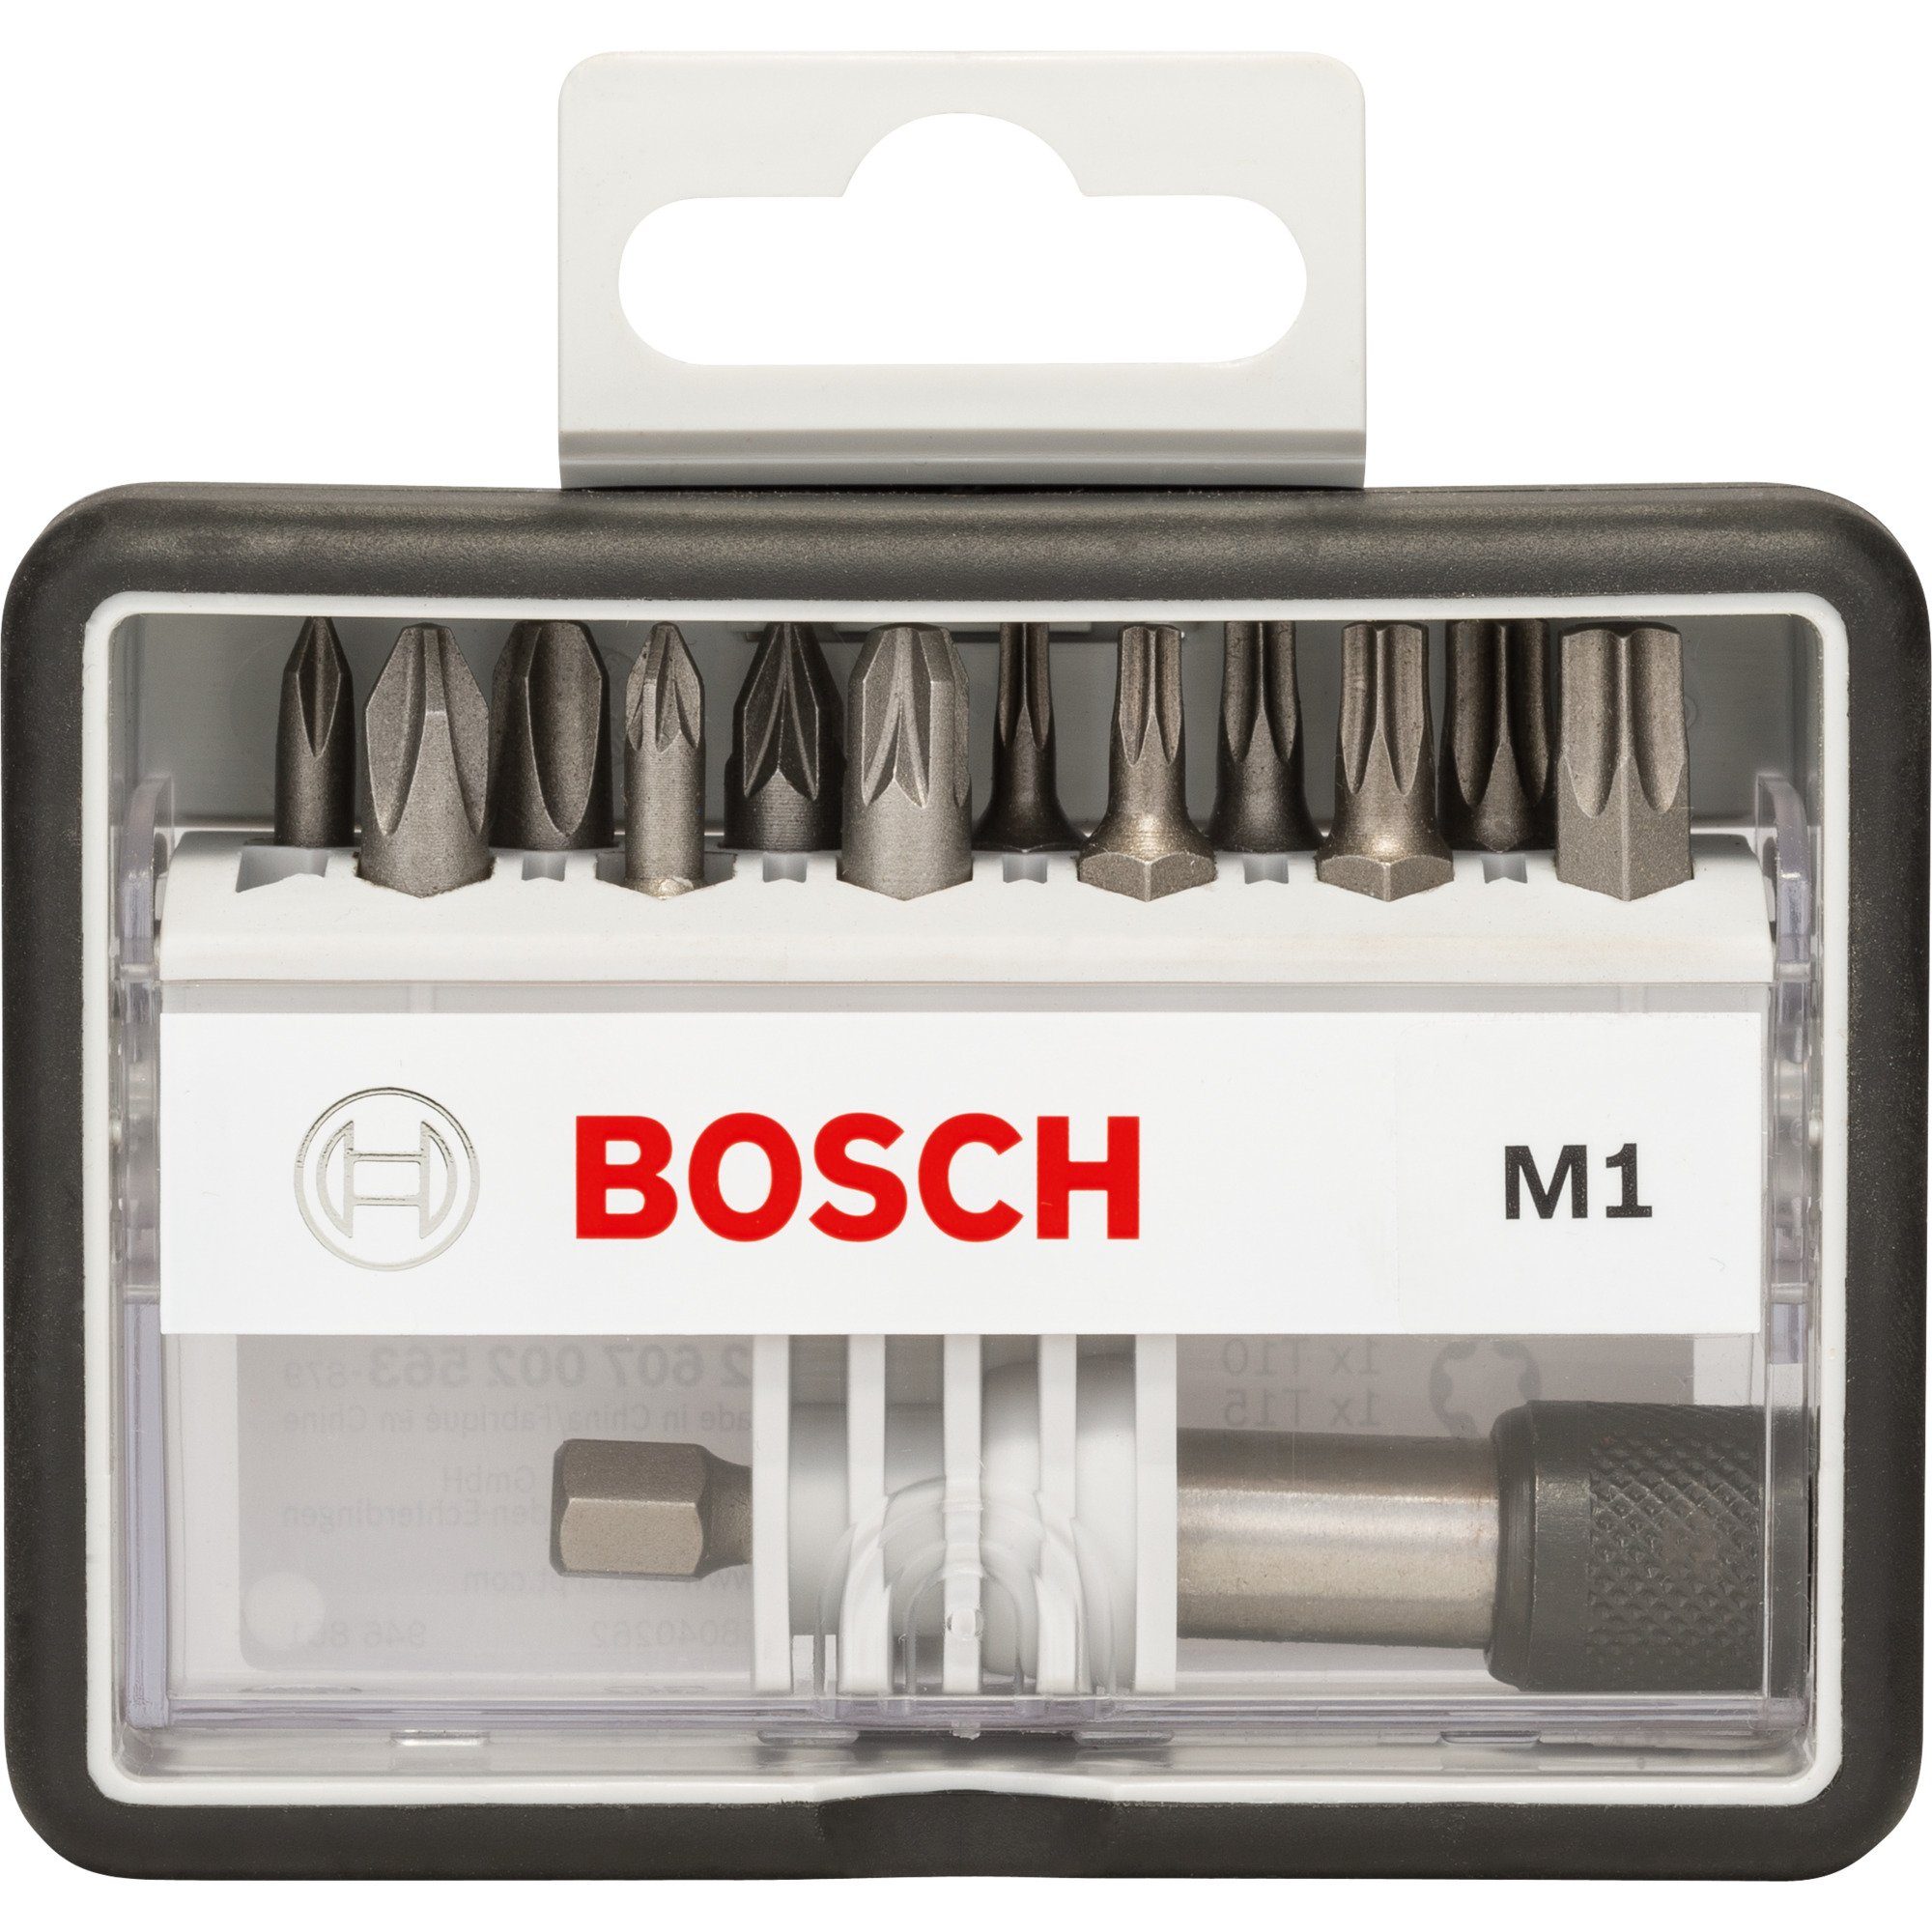 Robust Bit-Set Line Professional M BOSCH Schrauberbit-Set Bosch